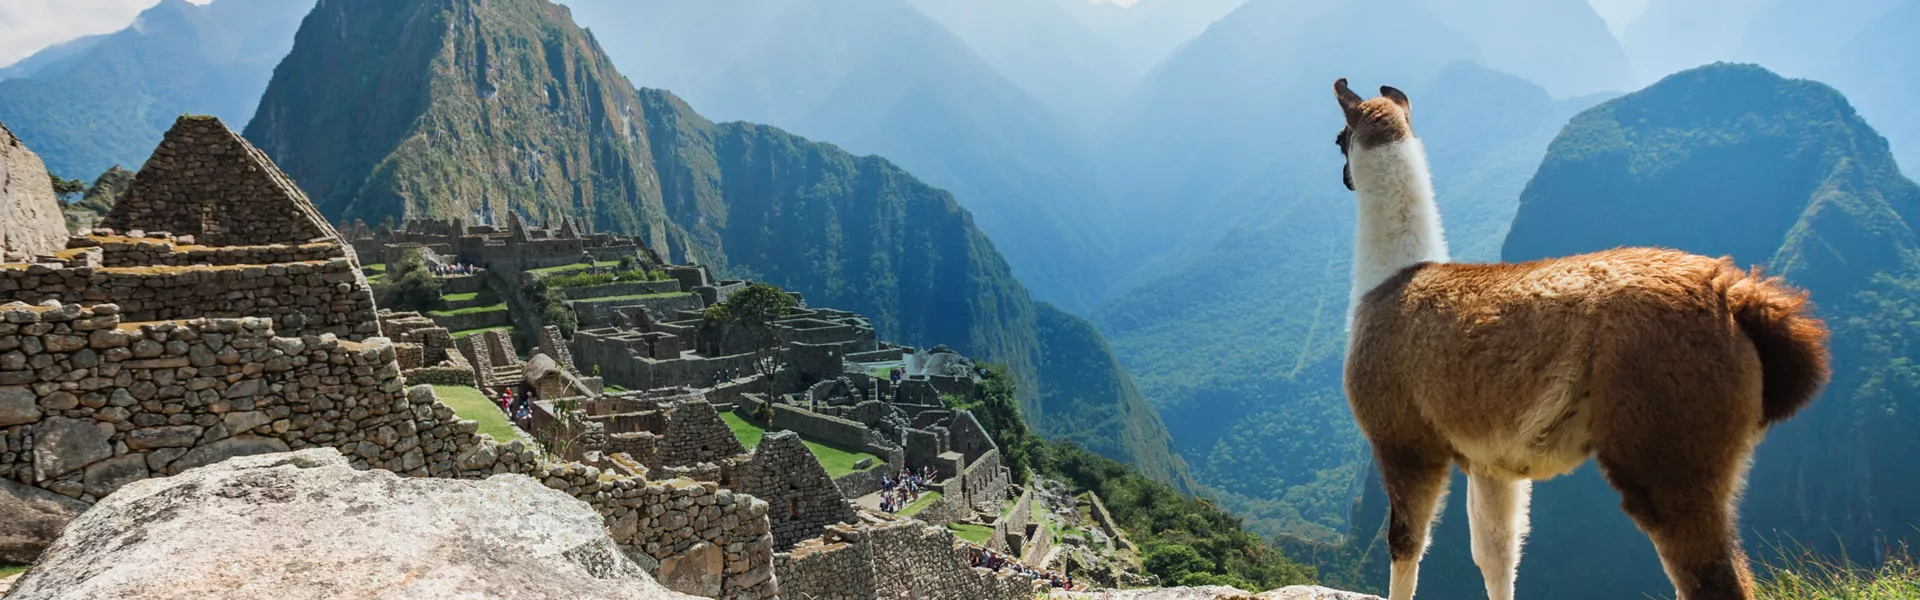 Machu Picchu and lama, Peru 